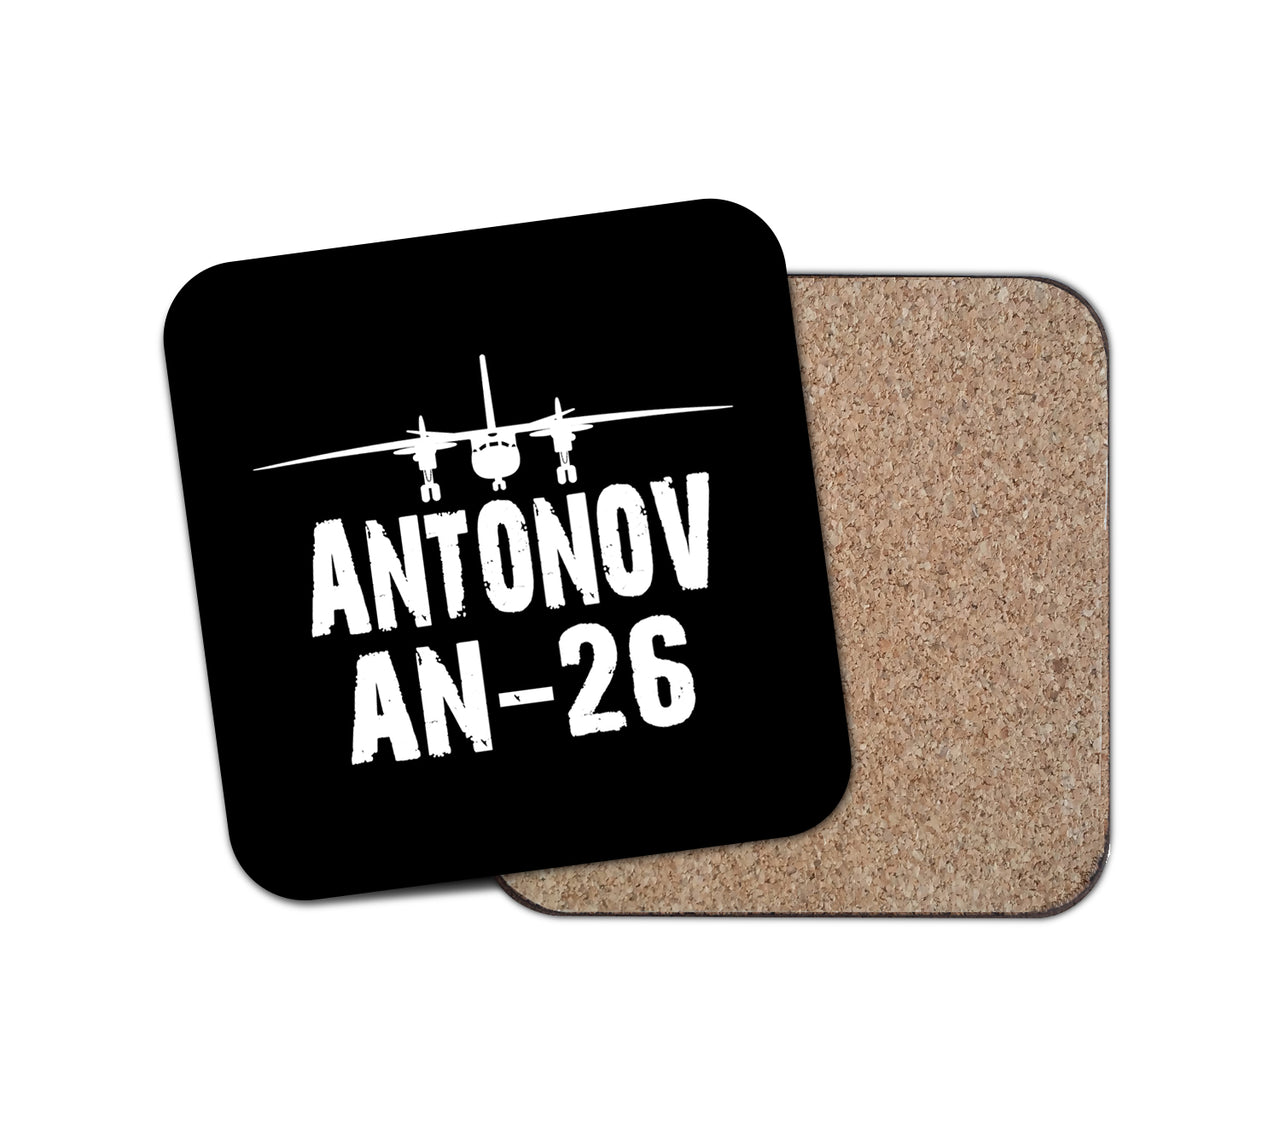 Antonov AN-26 & Plane Designed Coasters